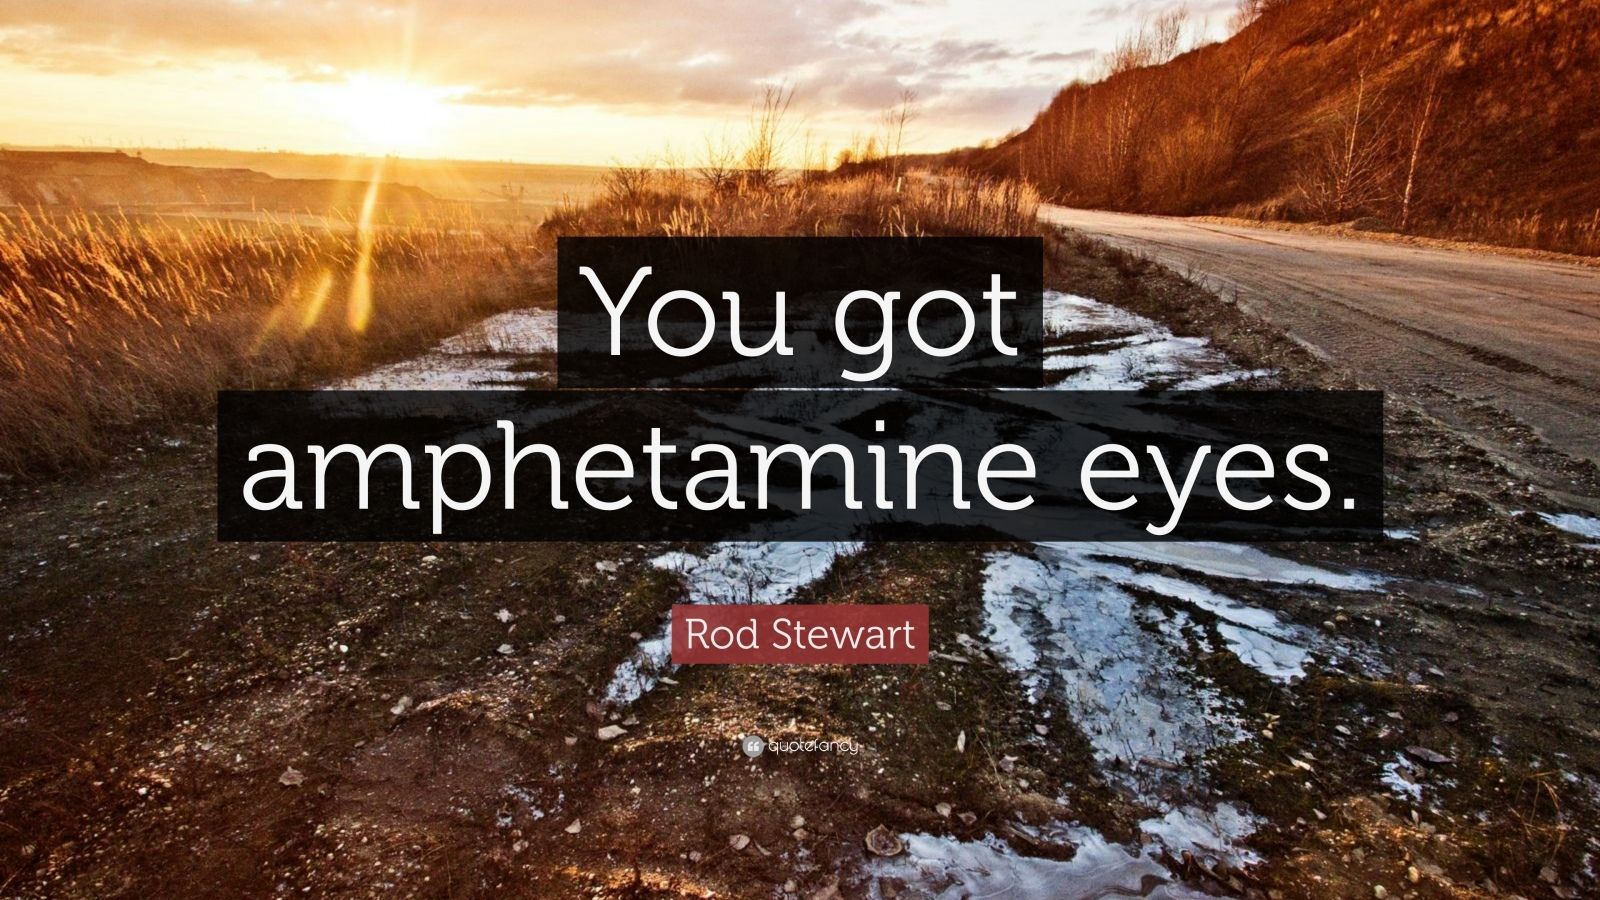 Rod Stewart Quote: “You got amphetamine eyes.” (7 wallpaper)